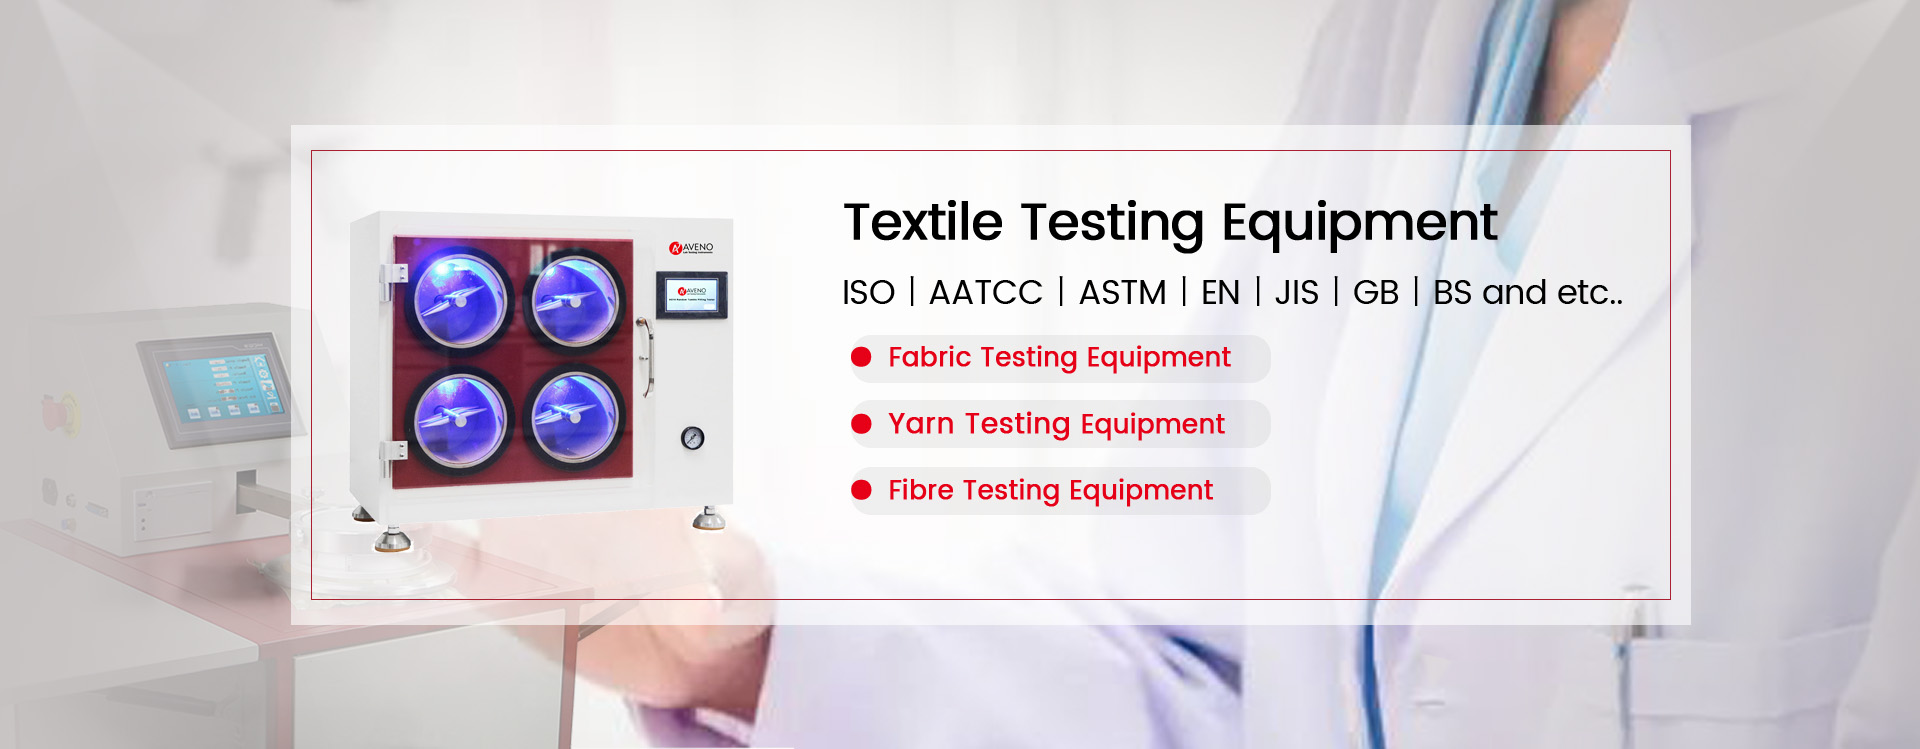 Textile Test Equipment